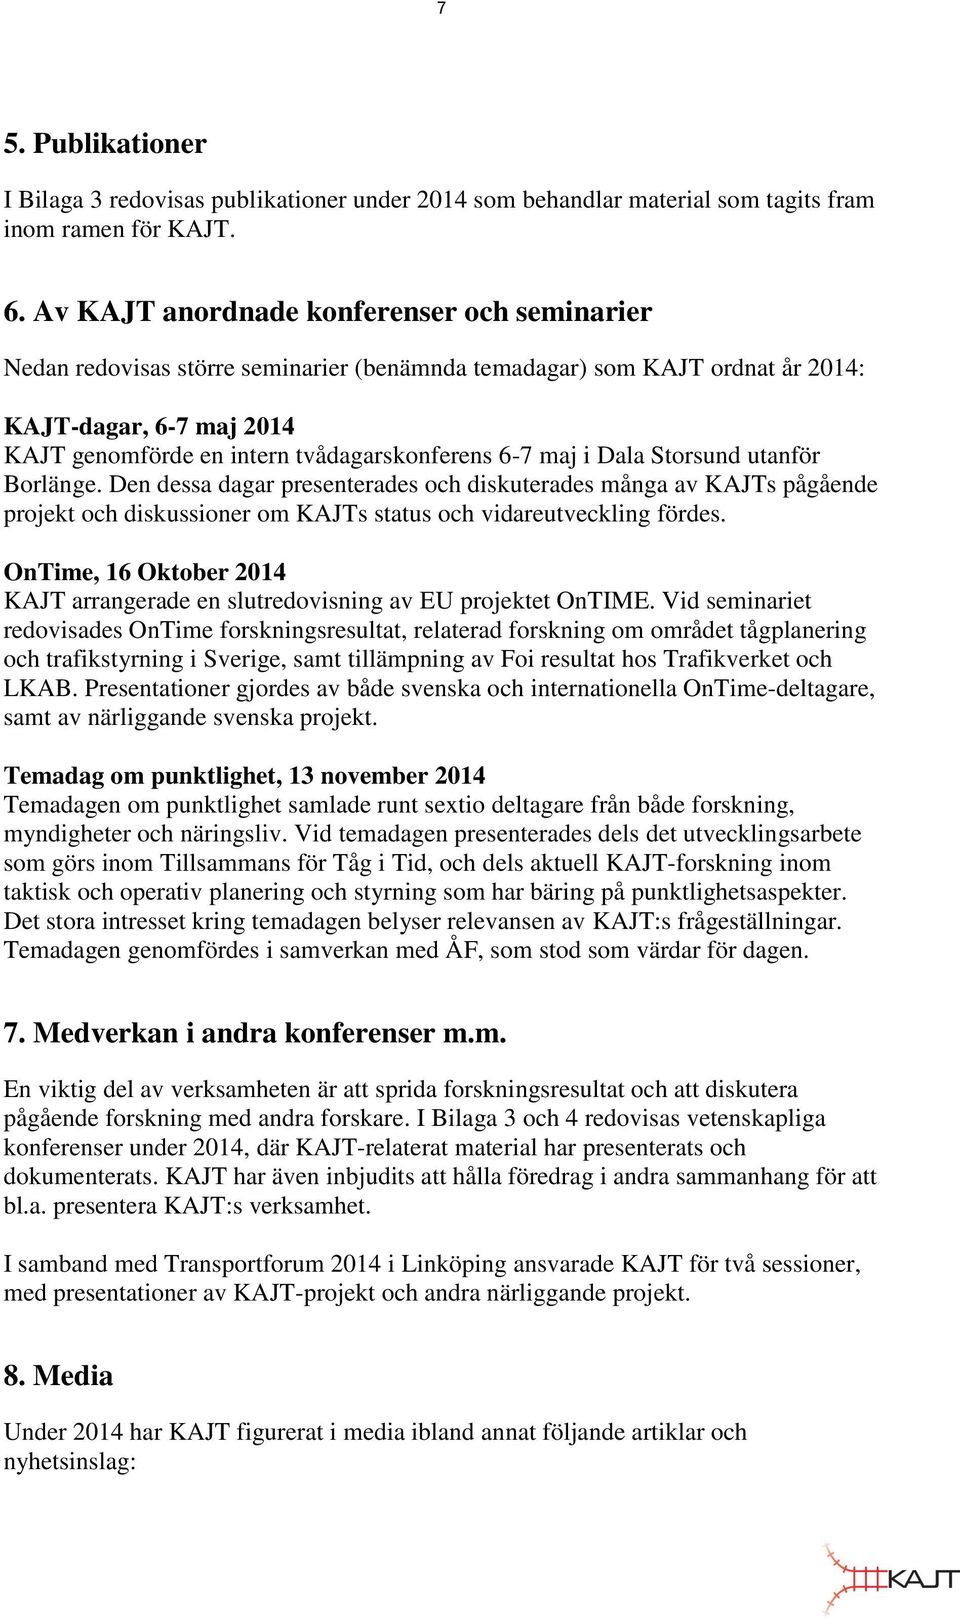 maj i Dala Storsund utanför Borlänge. Den dessa dagar presenterades och diskuterades många av KAJTs pågående projekt och diskussioner om KAJTs status och vidareutveckling fördes.